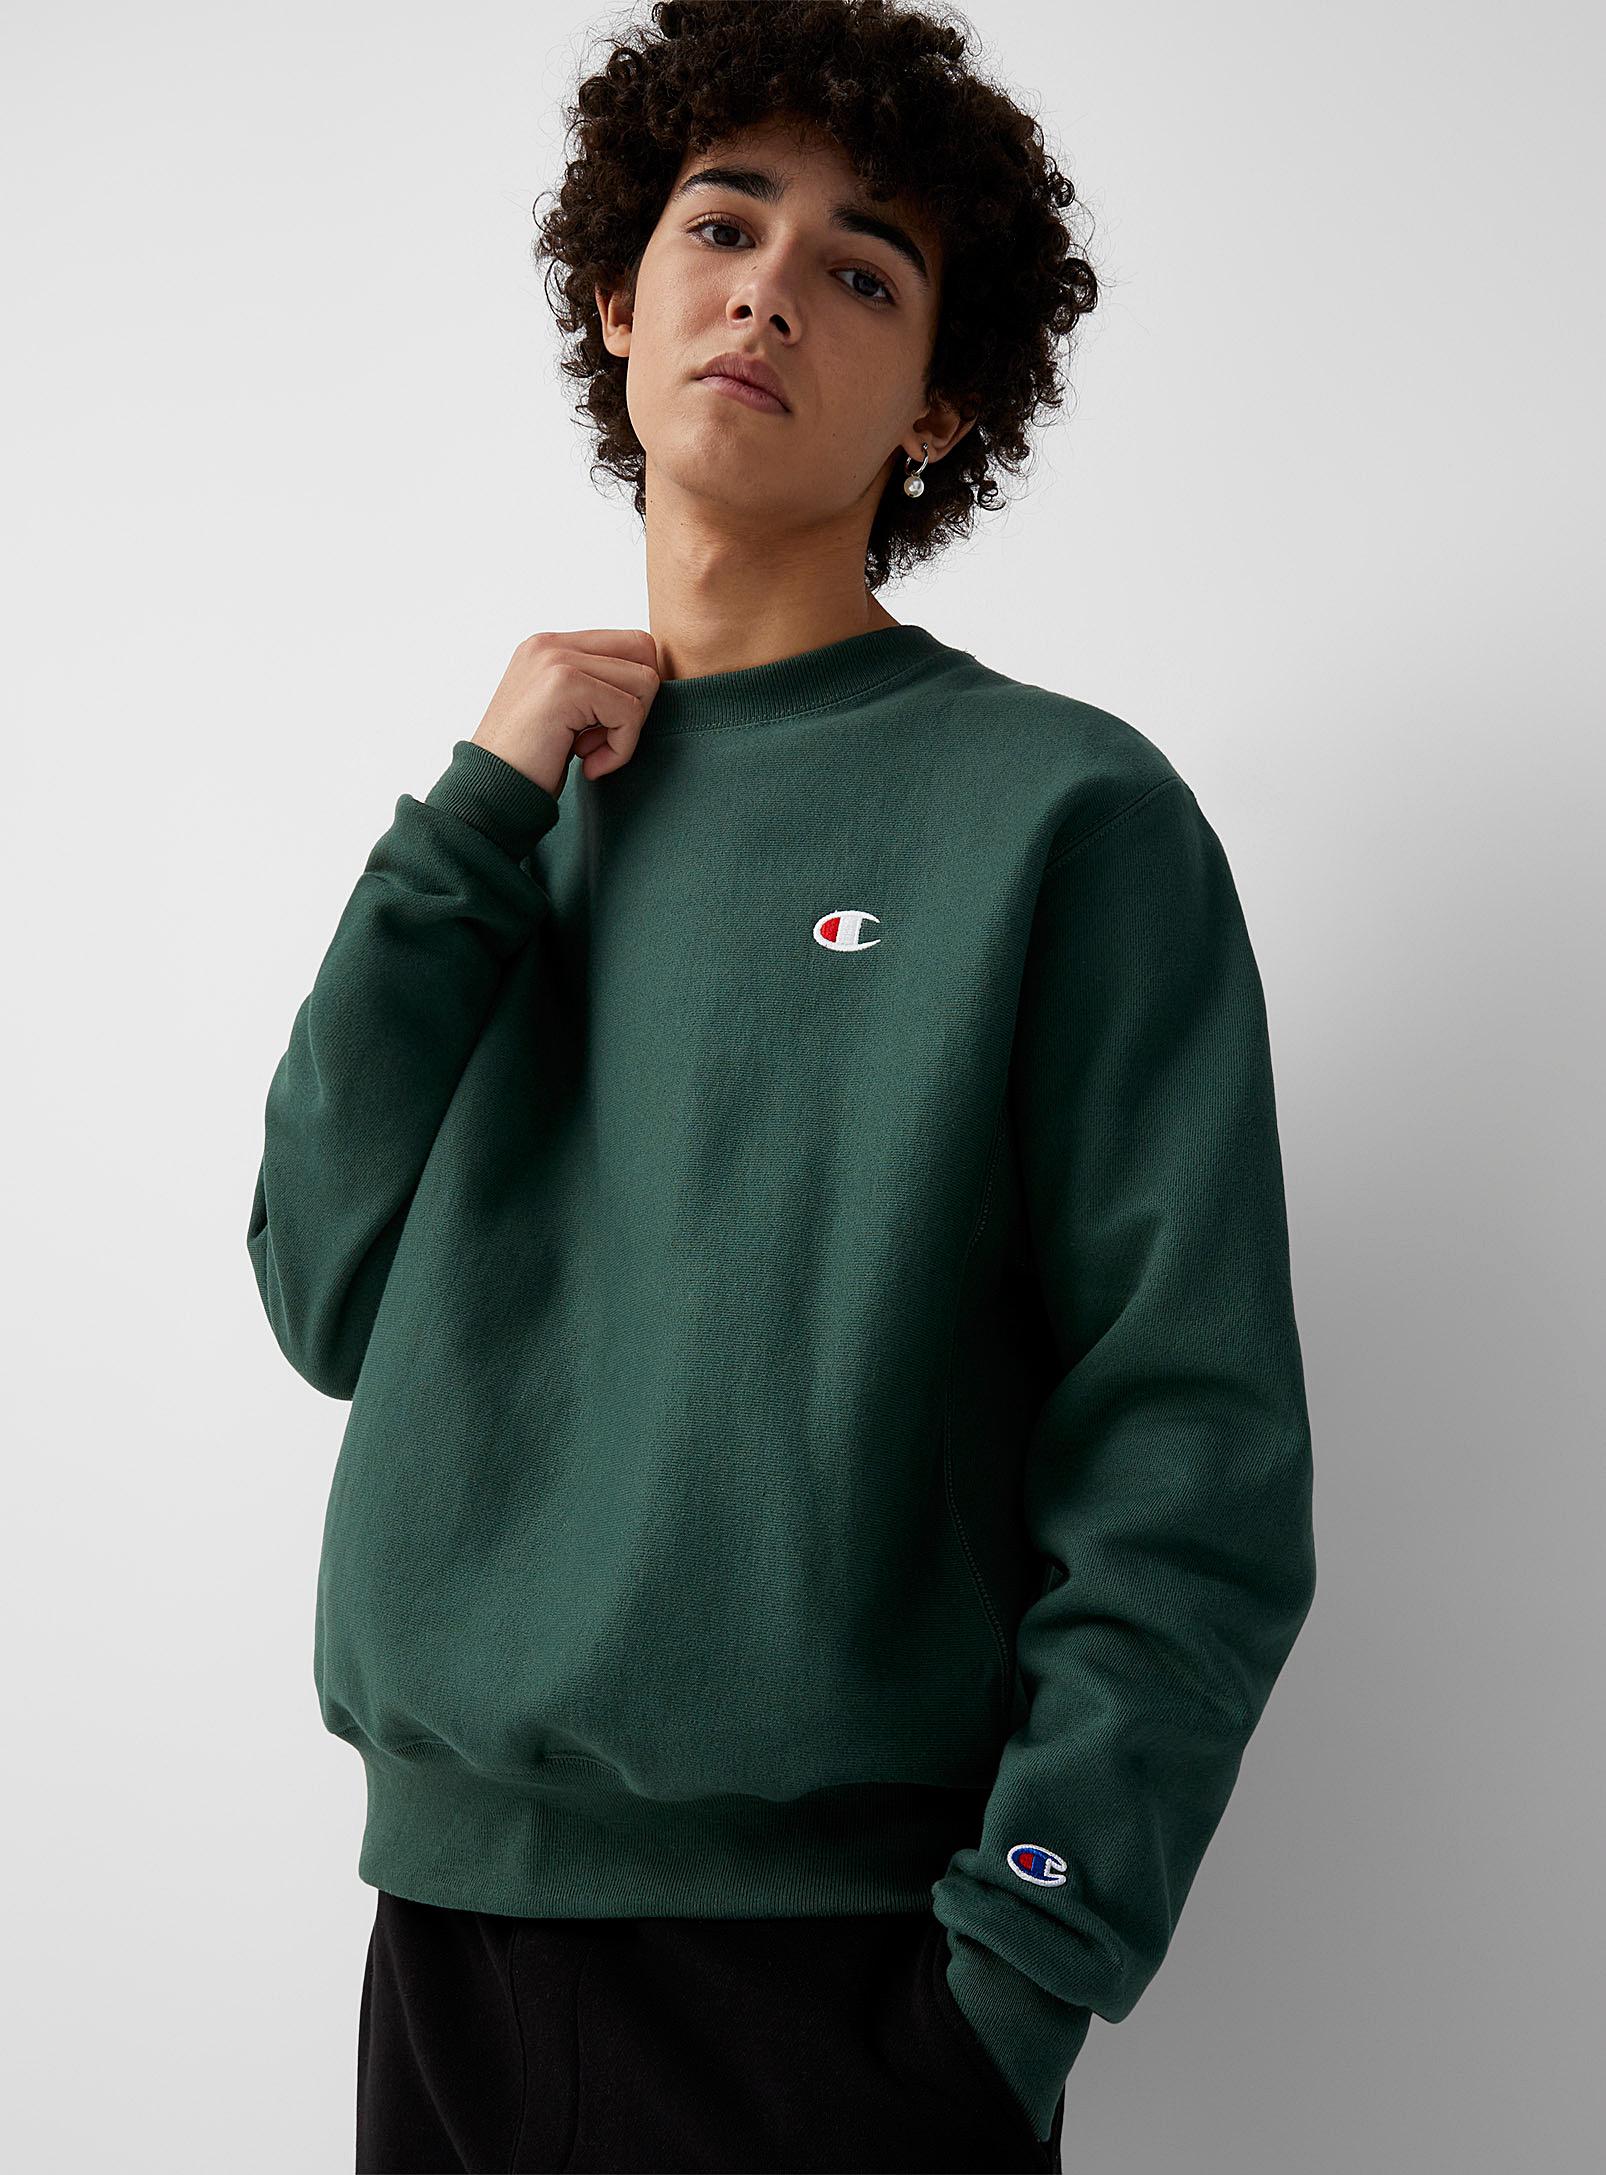 C Logo Reverse Weave Sweatshirt in Green for Men | Lyst